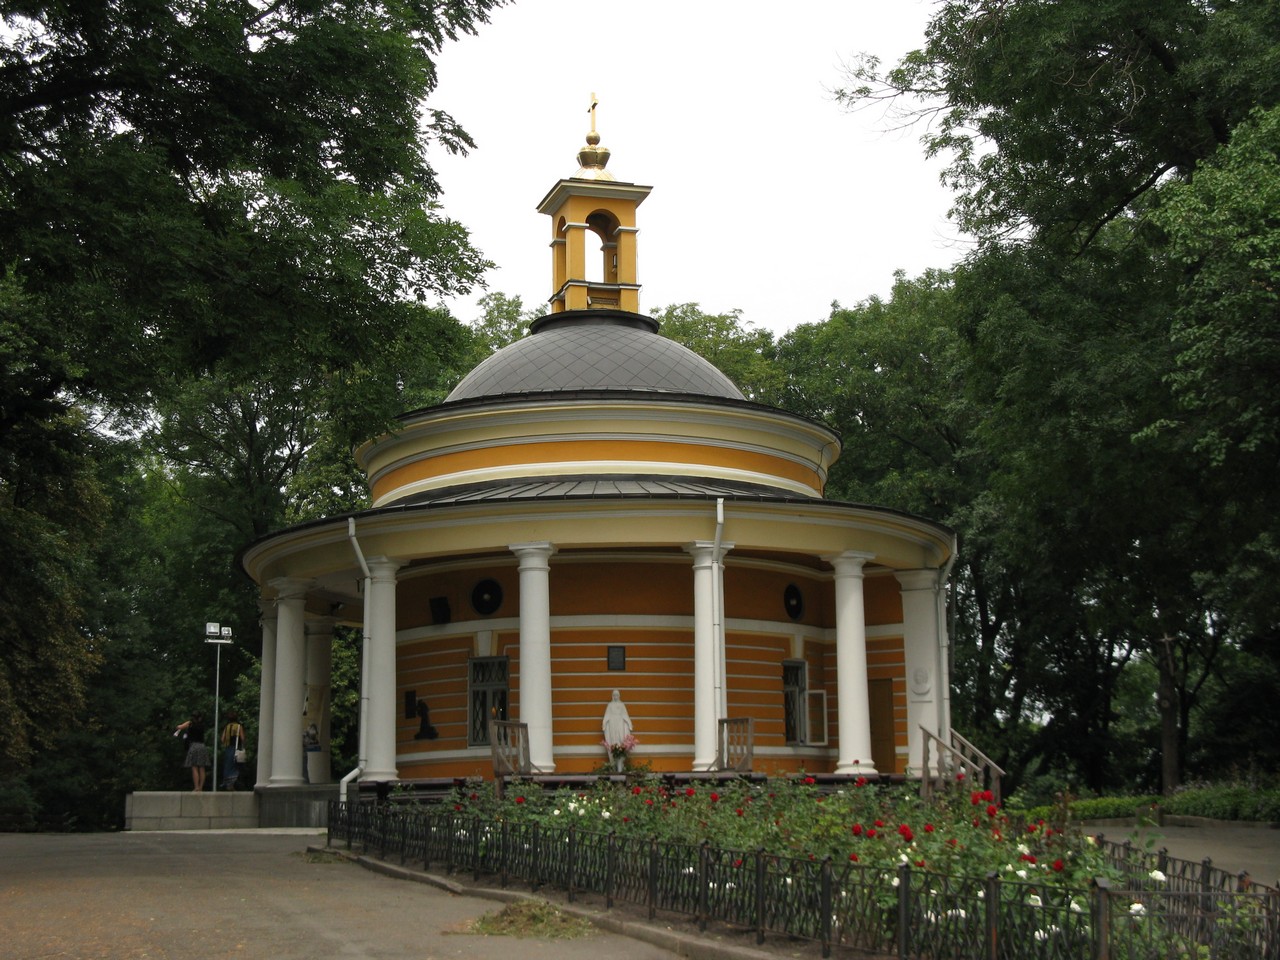 22 мая состоится освящение башенного карильона на колокольне церкви Святого Николая / flickr